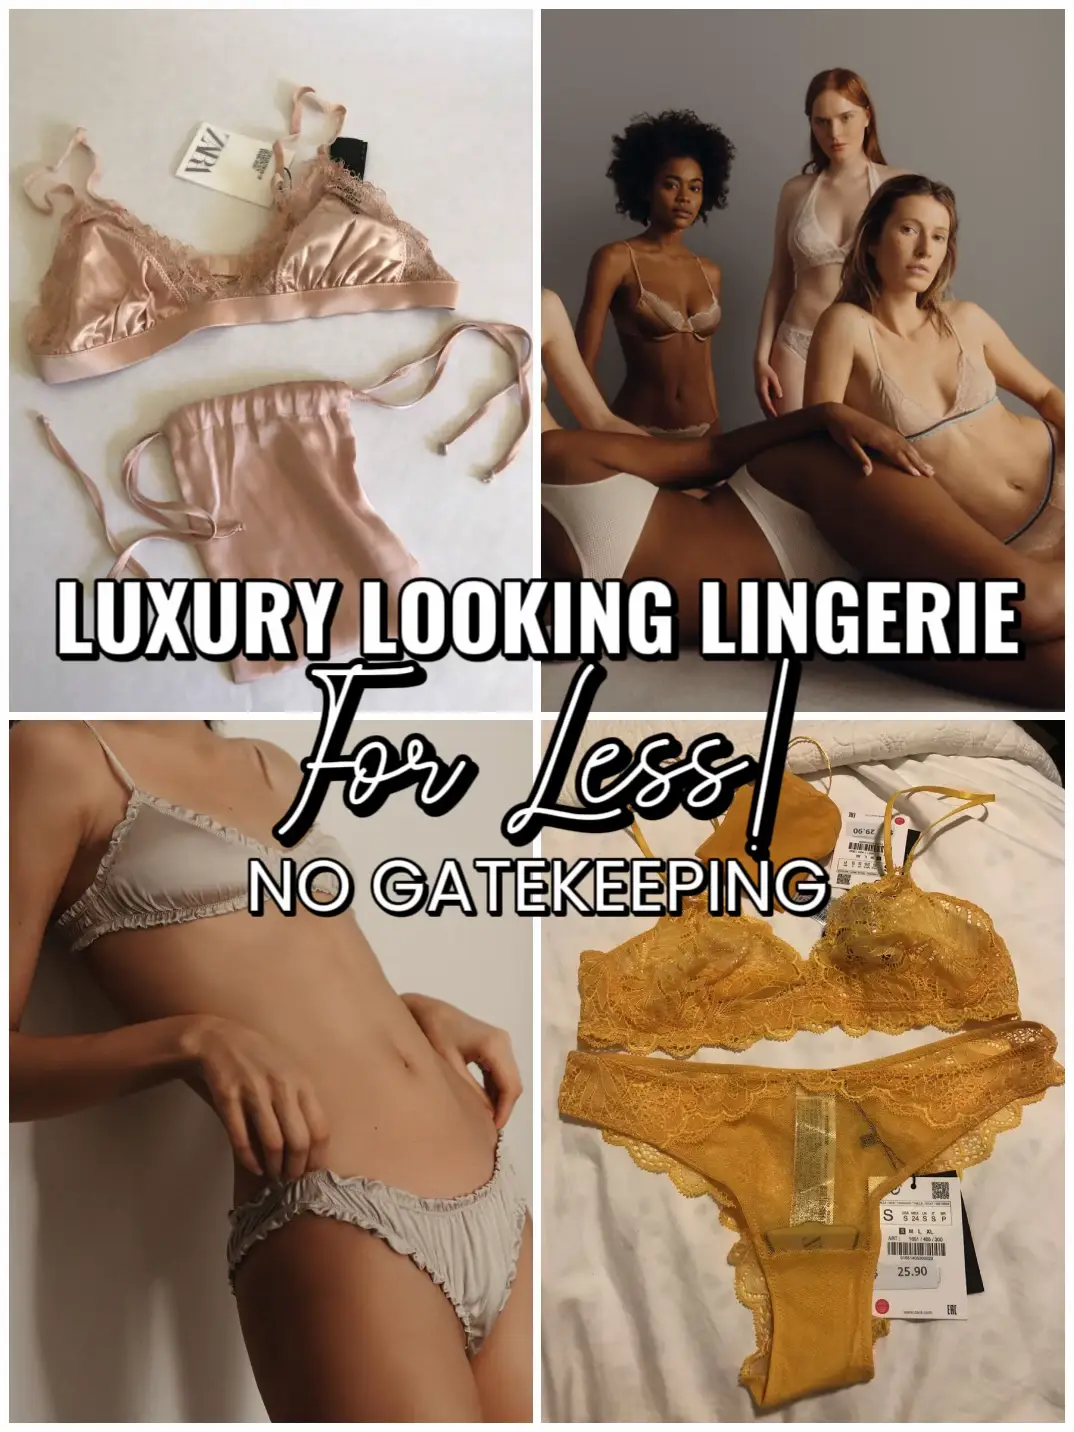 Shop burlington lingerie for Sale on Shopee Philippines